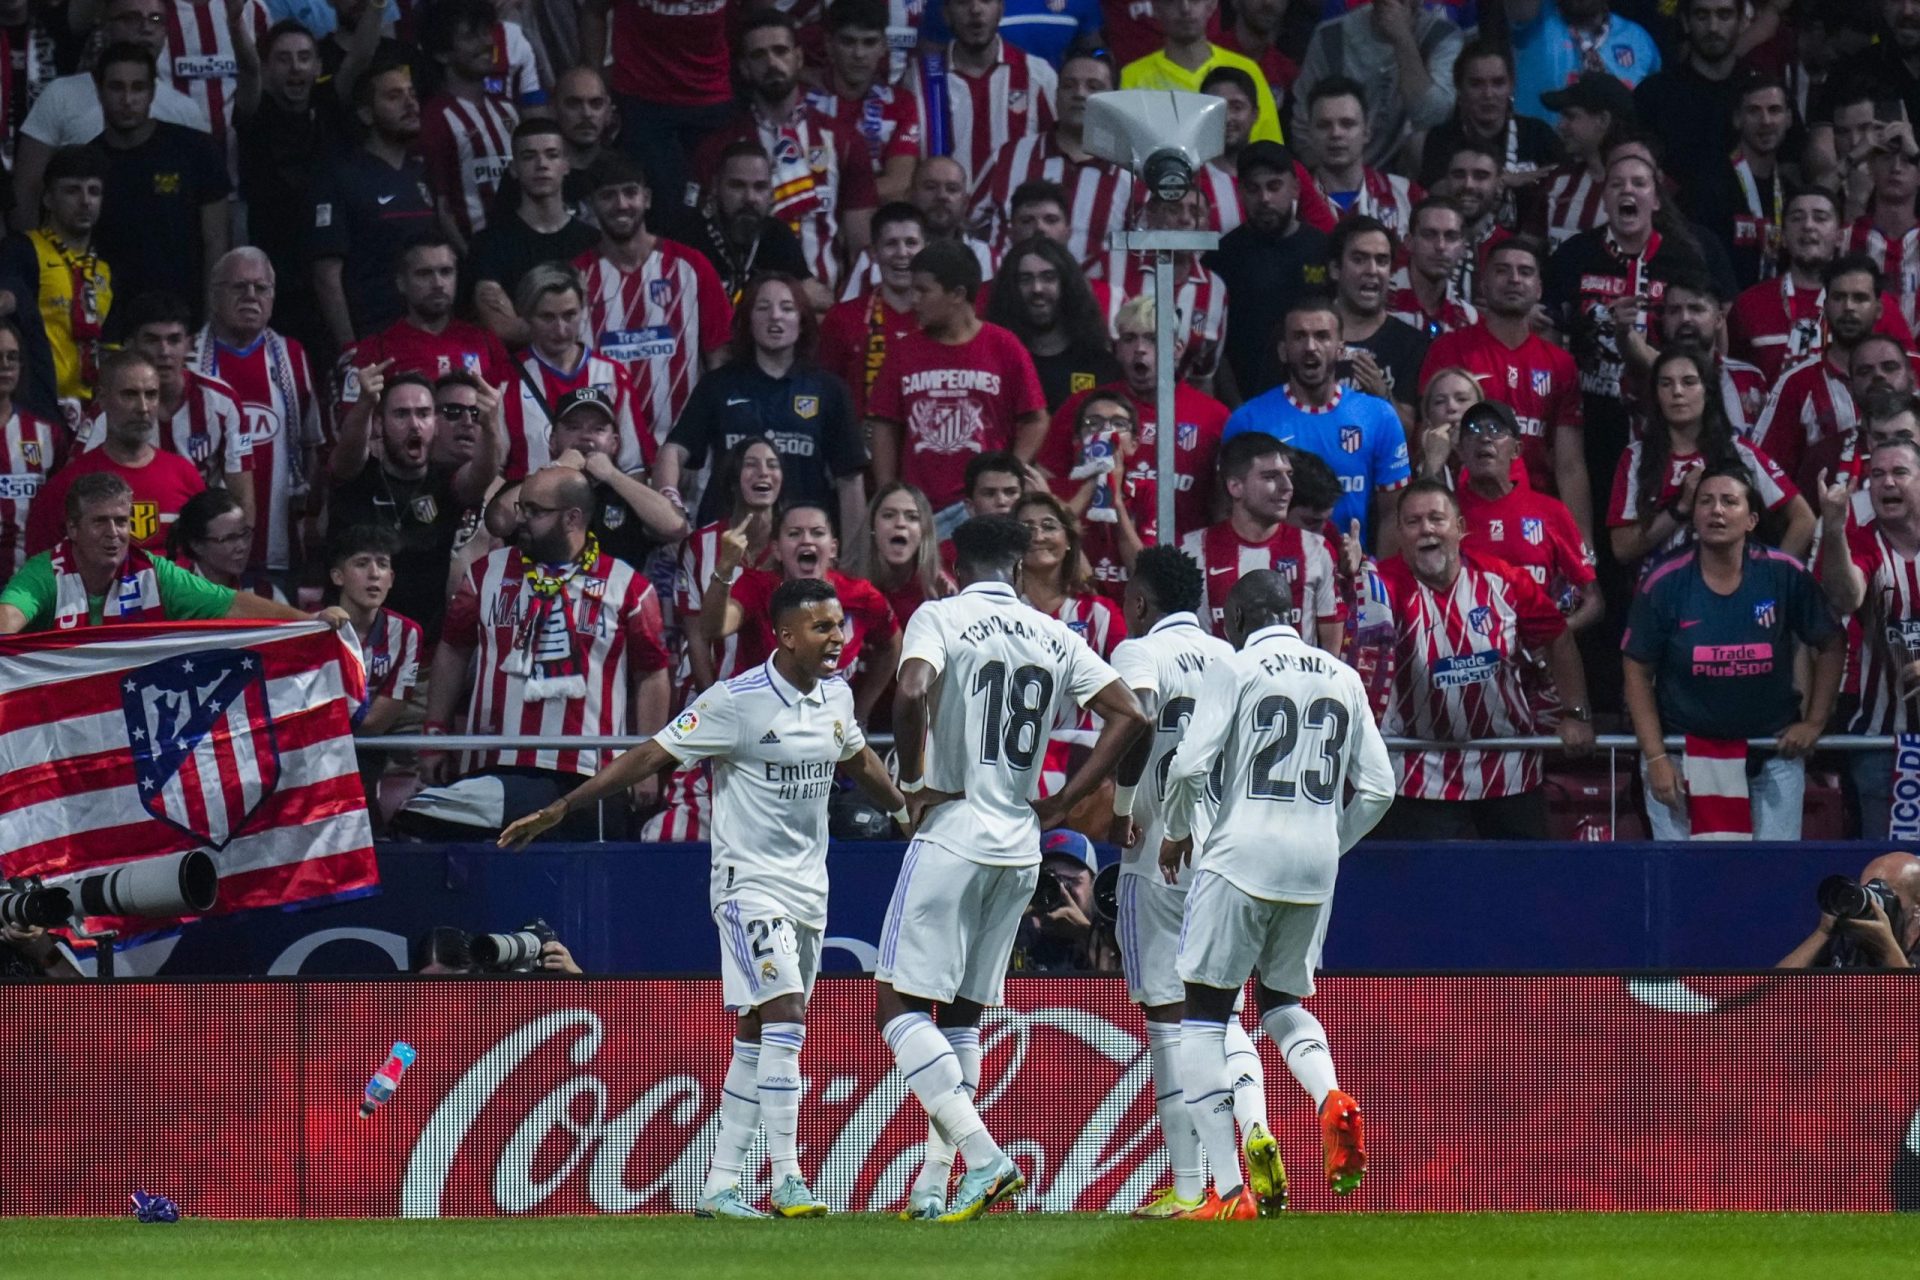 El Madrid sigue bailando, vence al Atlético para mantenerse perfecto